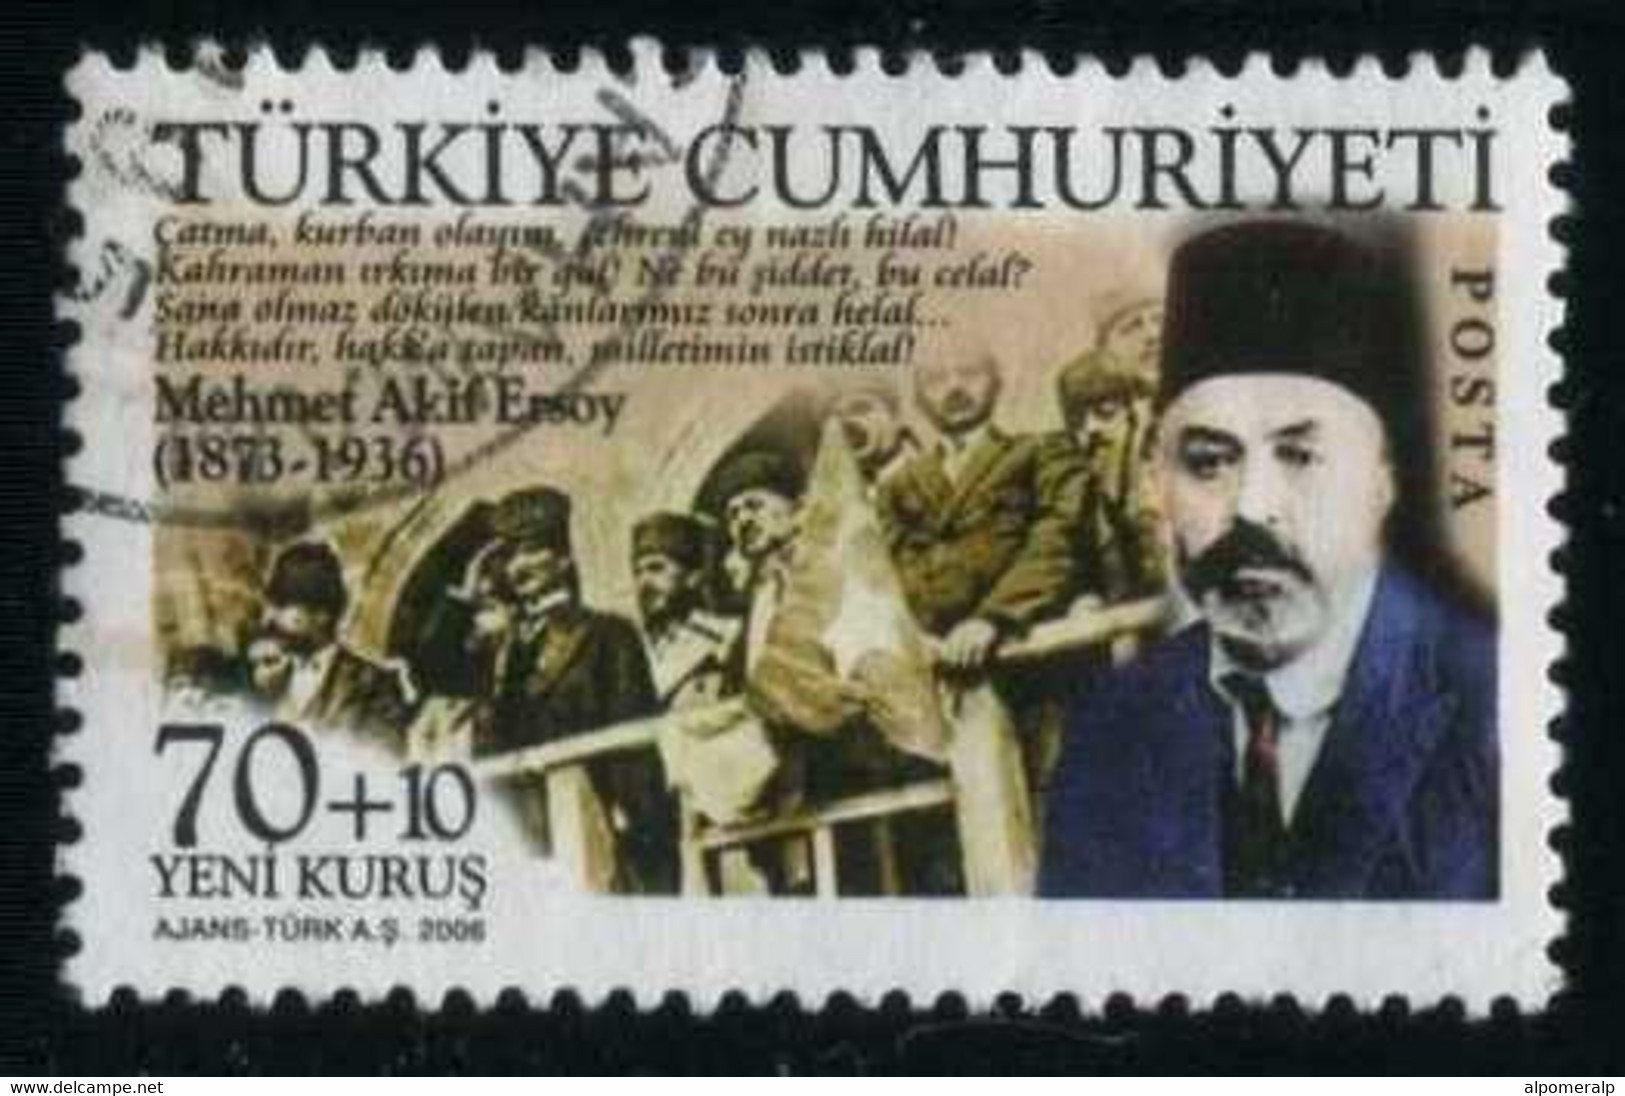 Türkiye 2006 Mi 3554 Mehmet Akif Ersoy (1873-1936), Writer Of National Anthem, Literature - Usati